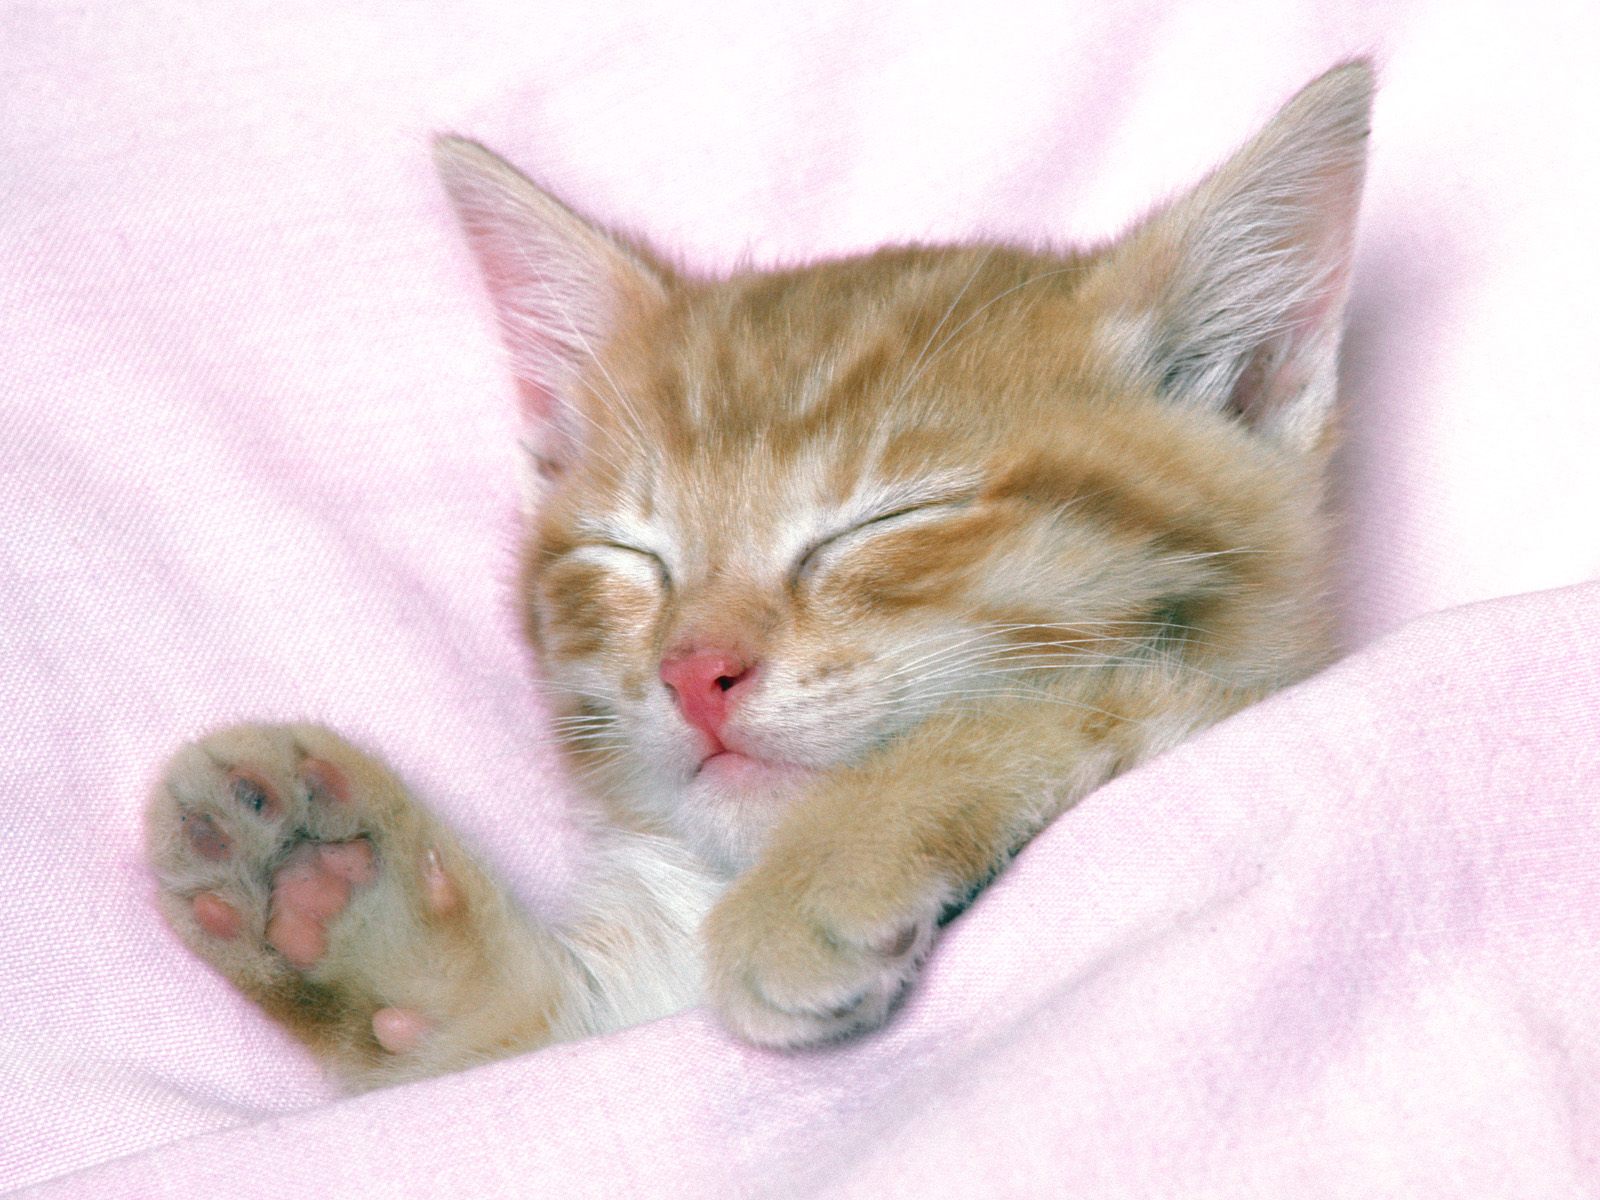 http://4.bp.blogspot.com/-fCw_ebMDQhw/T31FKzZNc5I/AAAAAAAAAQE/EFmIlhccjSs/s1600/Sleeping-Cat-Wallpapers-HD.jpg